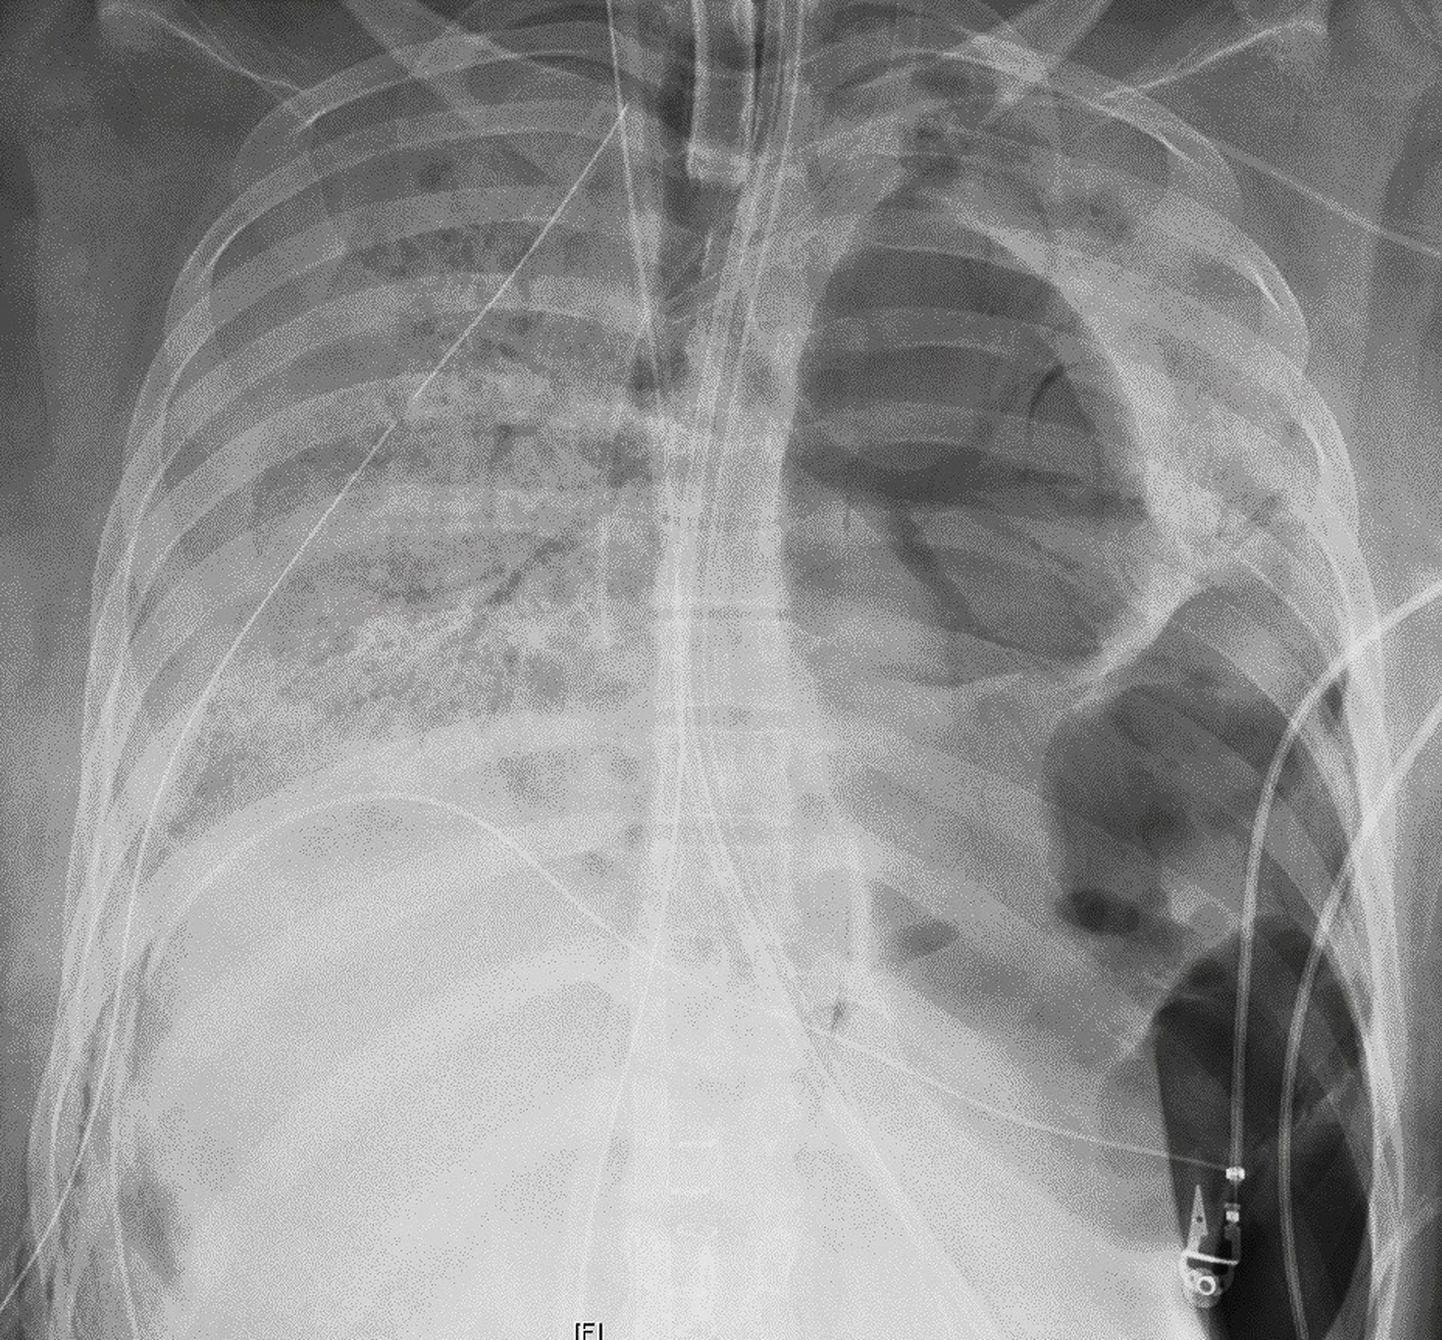 Röntgenülesvõte Covid-19 patsiendi kahjustunud kopsudest enne siirdamist.